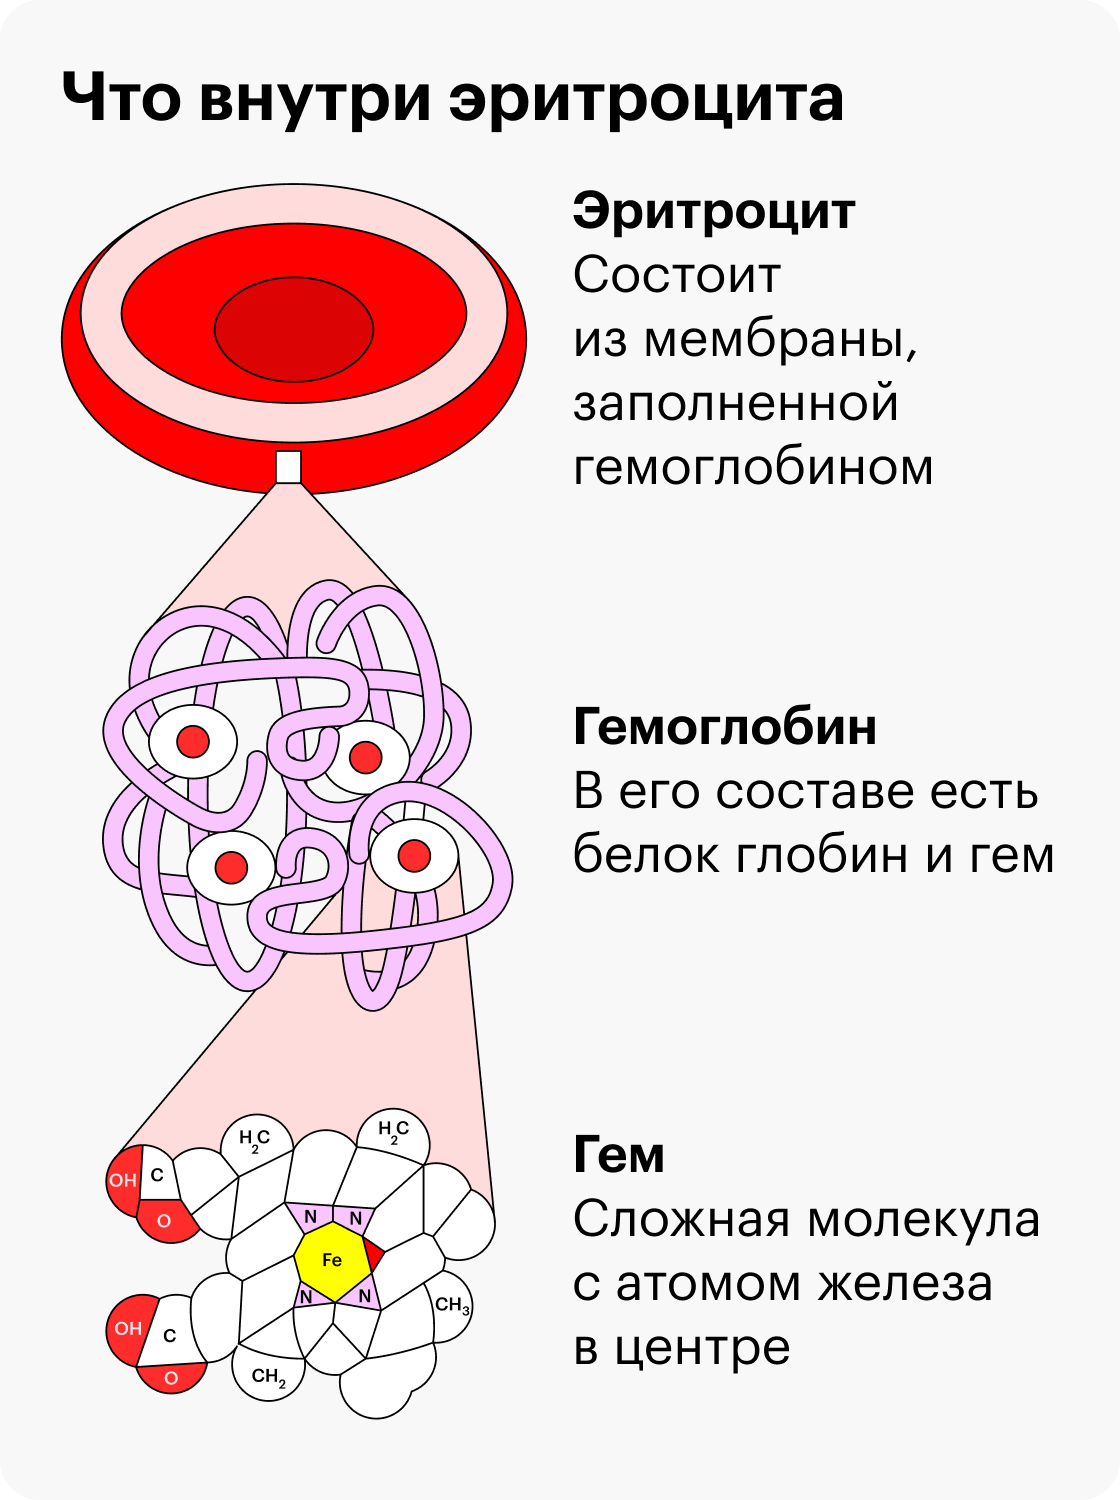 При&nbsp;анемии в крови мало красных кровяных клеток — эритроцитов. Они переносят кислород к остальным клеткам организма и забирают у них углекислый газ. Это возможно благодаря сложному белку гемоглобину. В его составе есть белок гем — именно он прикрепляет молекулы кислорода